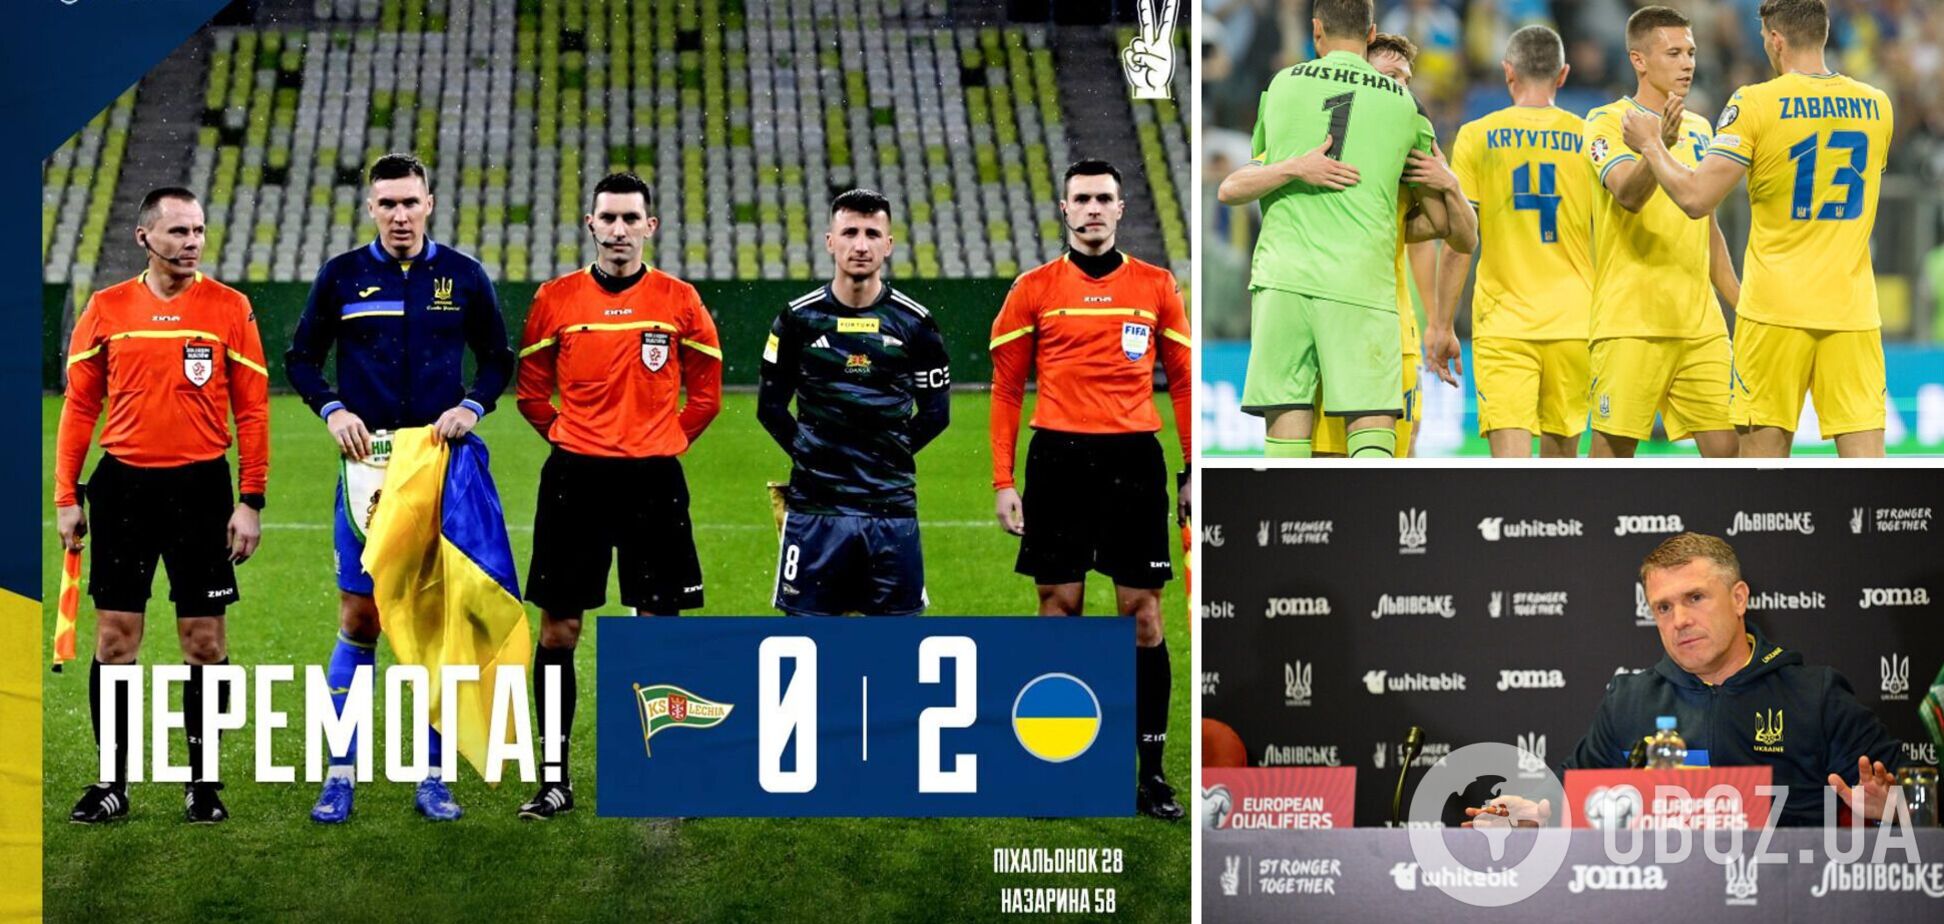 Сборная Украины по футболу выиграла тайный 'ненужный' матч в Польше